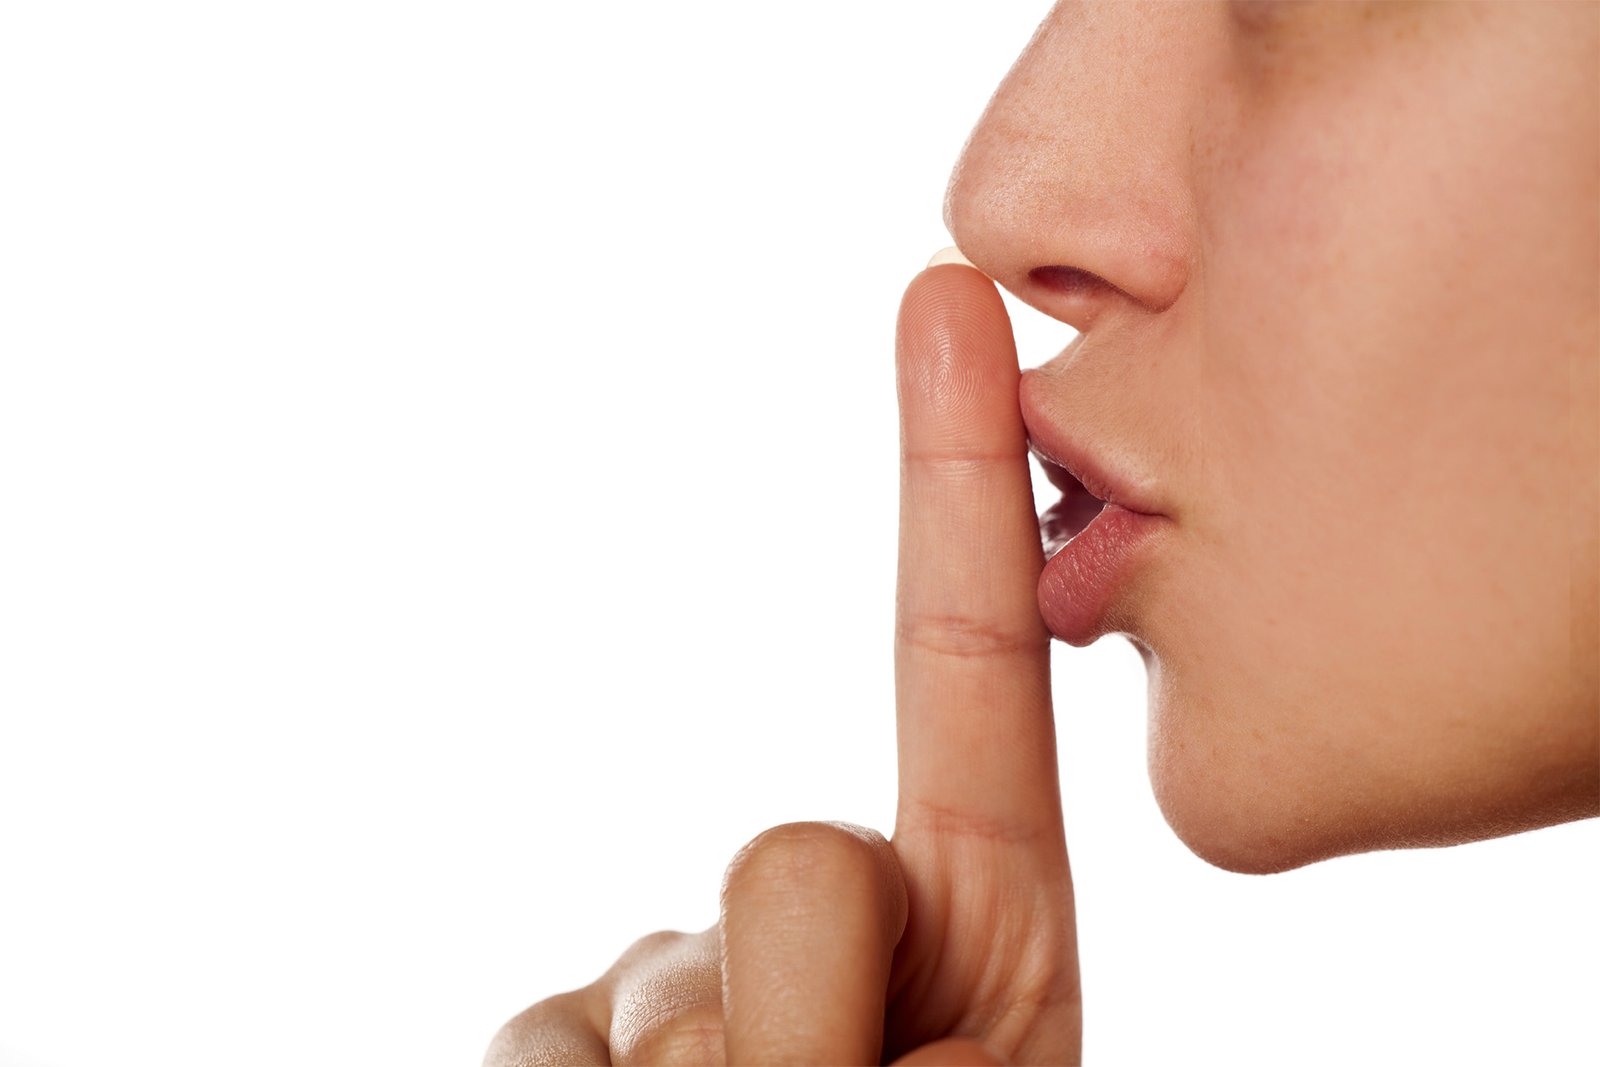 Perfil do rosto de uma pessoa com o dedo em posição vertical, sinalizando silêncio